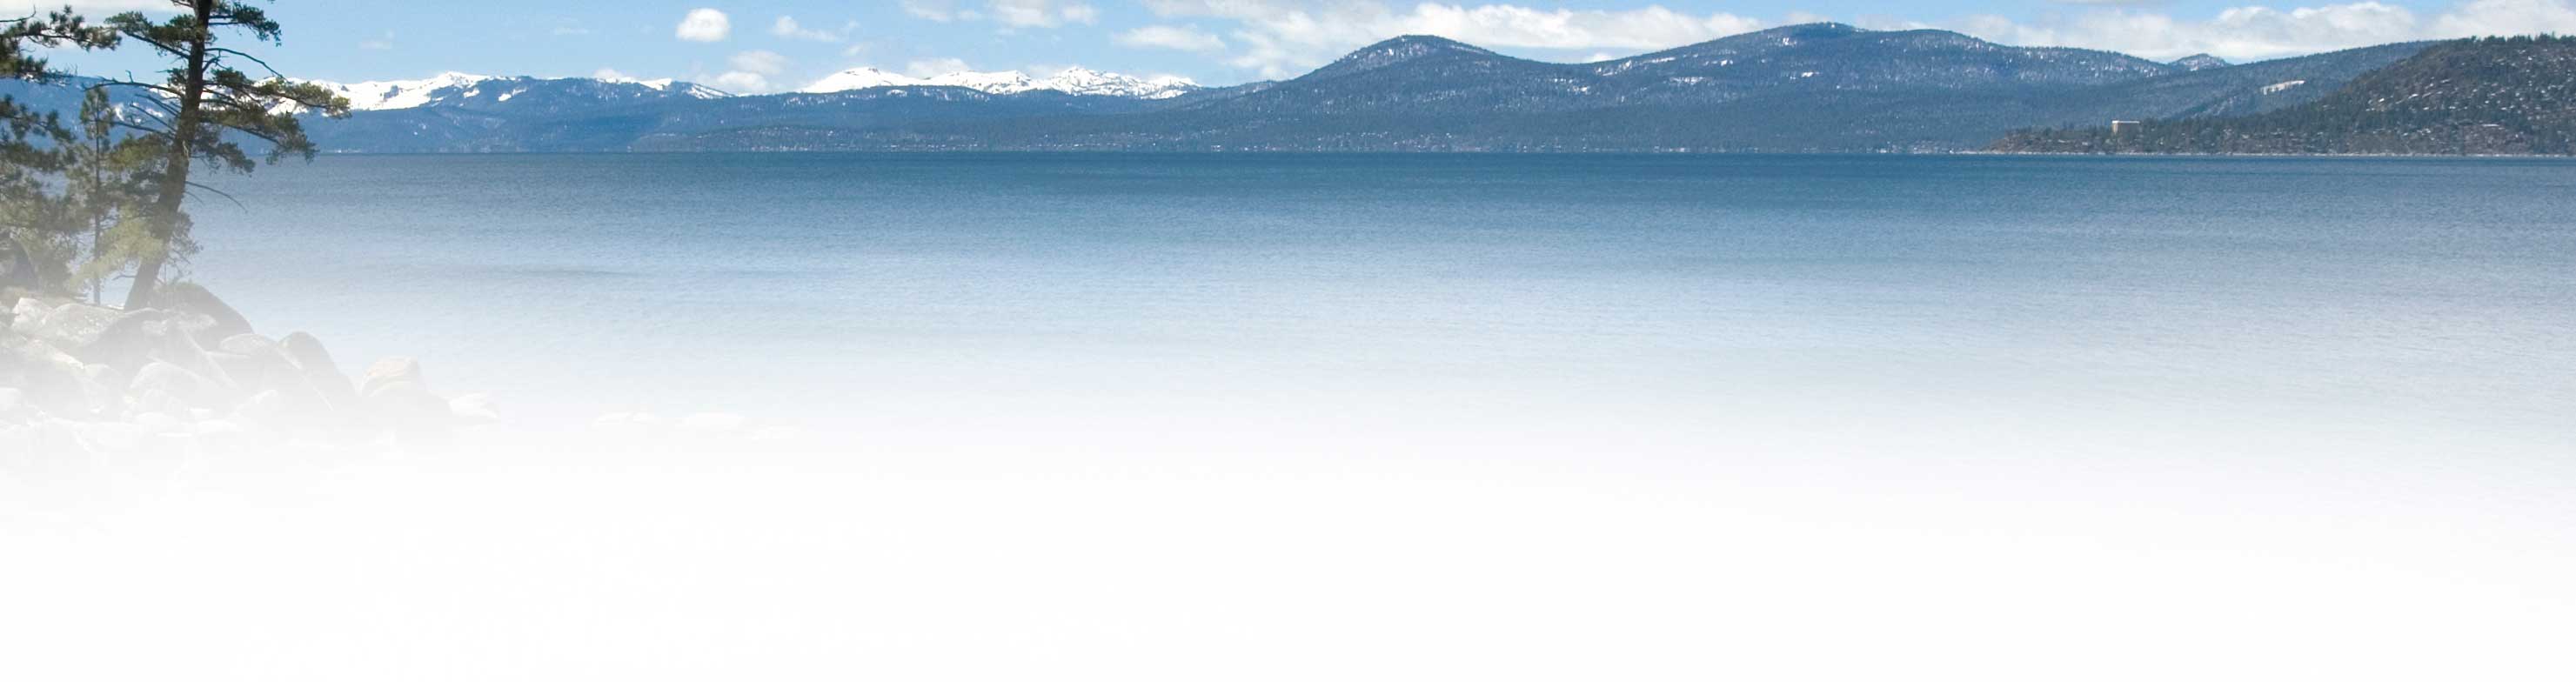 Lake Tahoe scenic photo